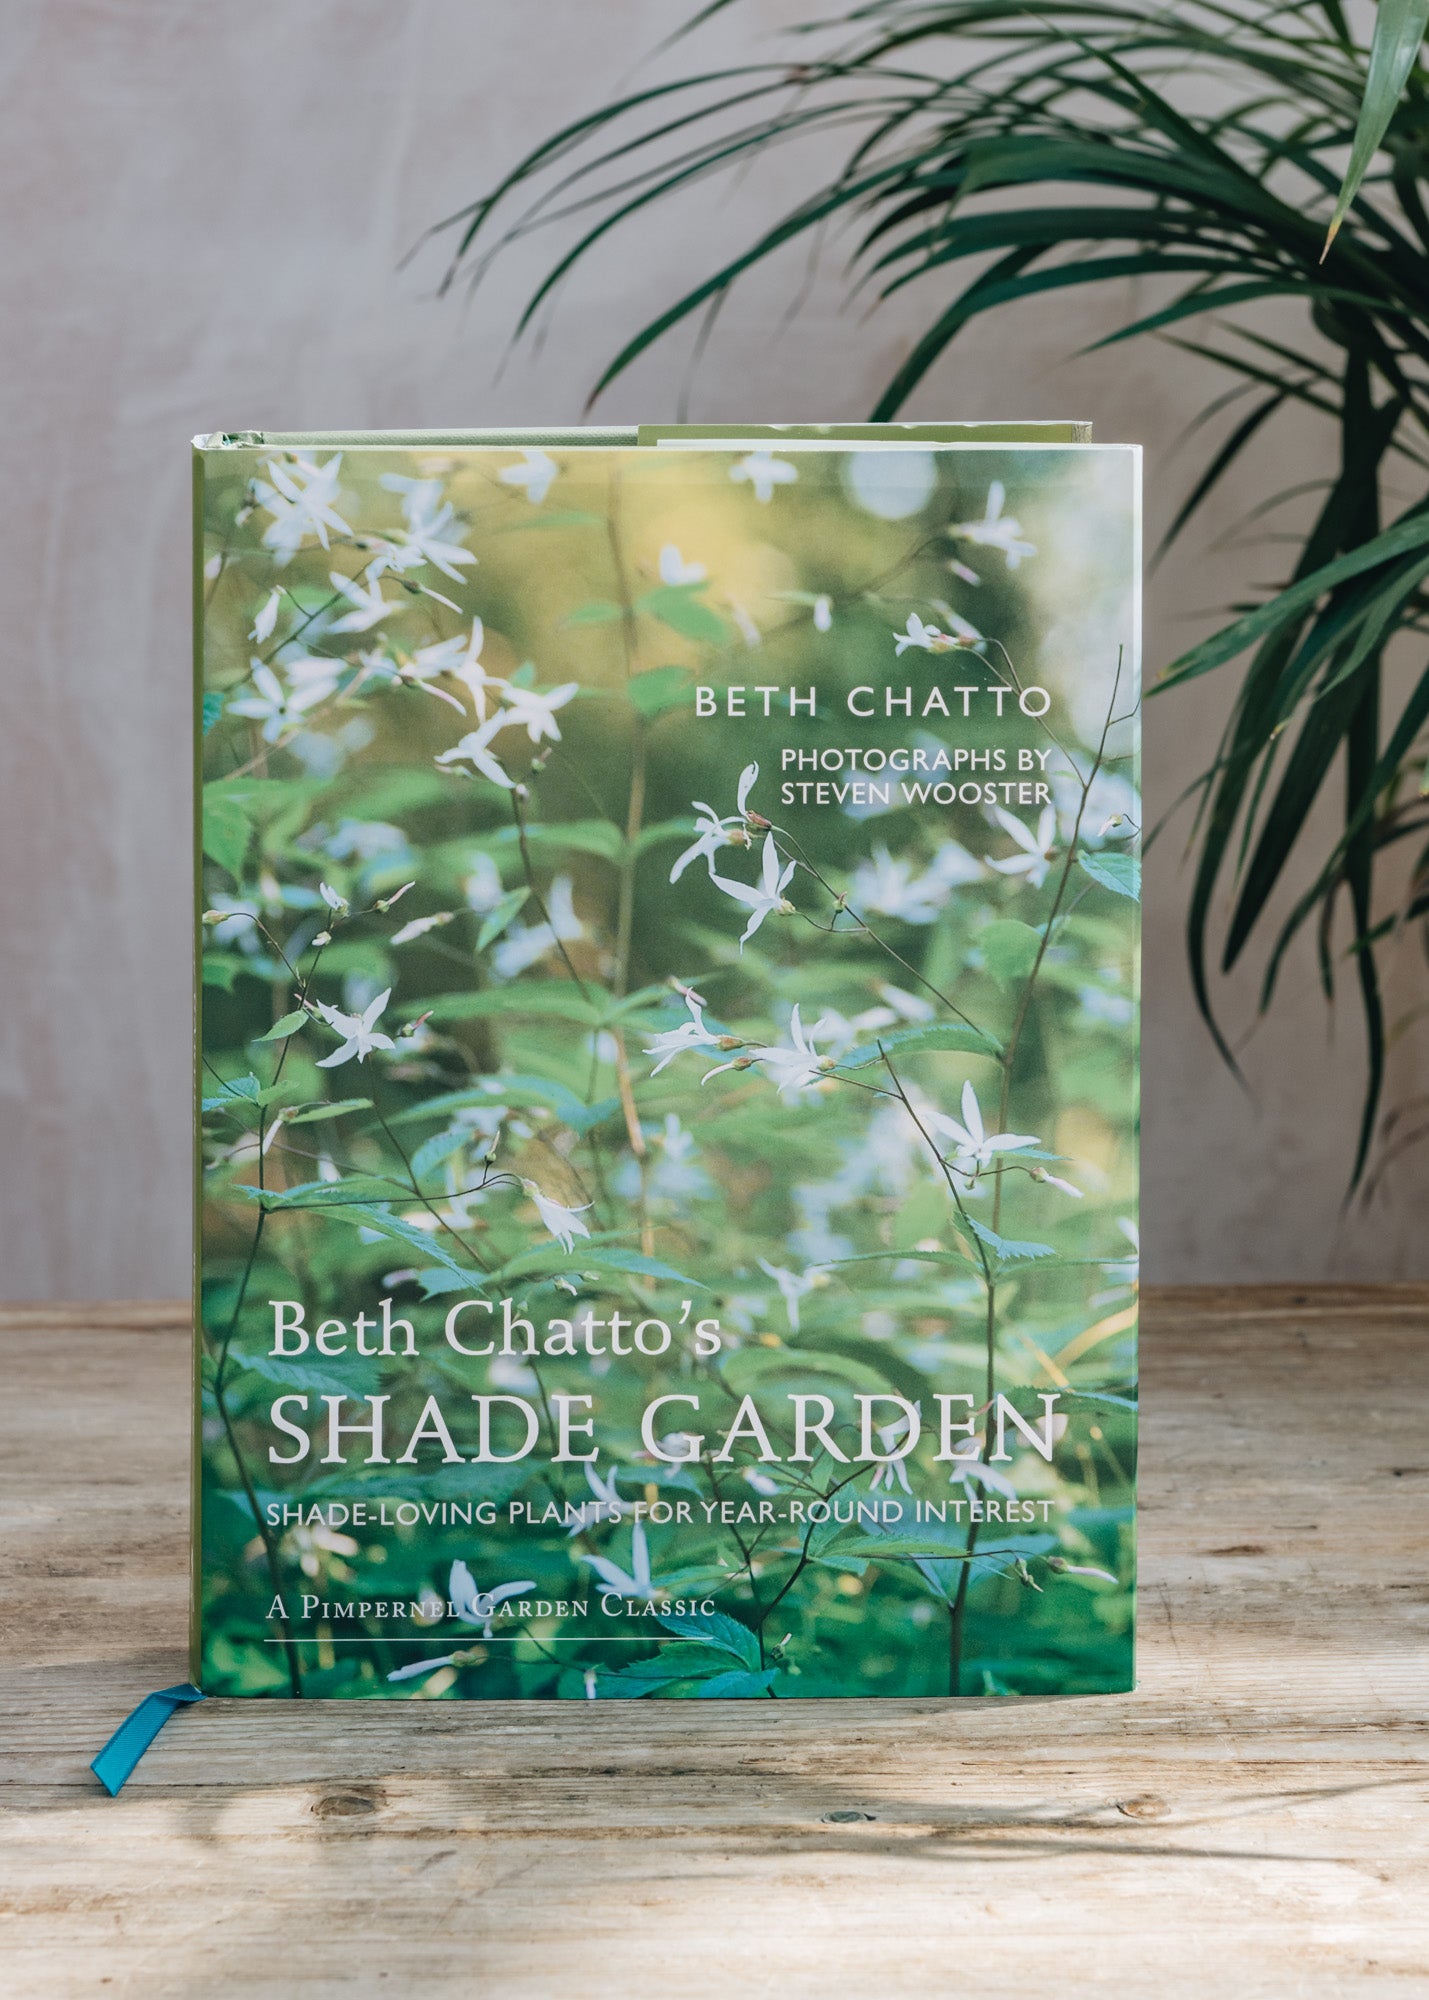 Beth Chatto's Shade Garden book